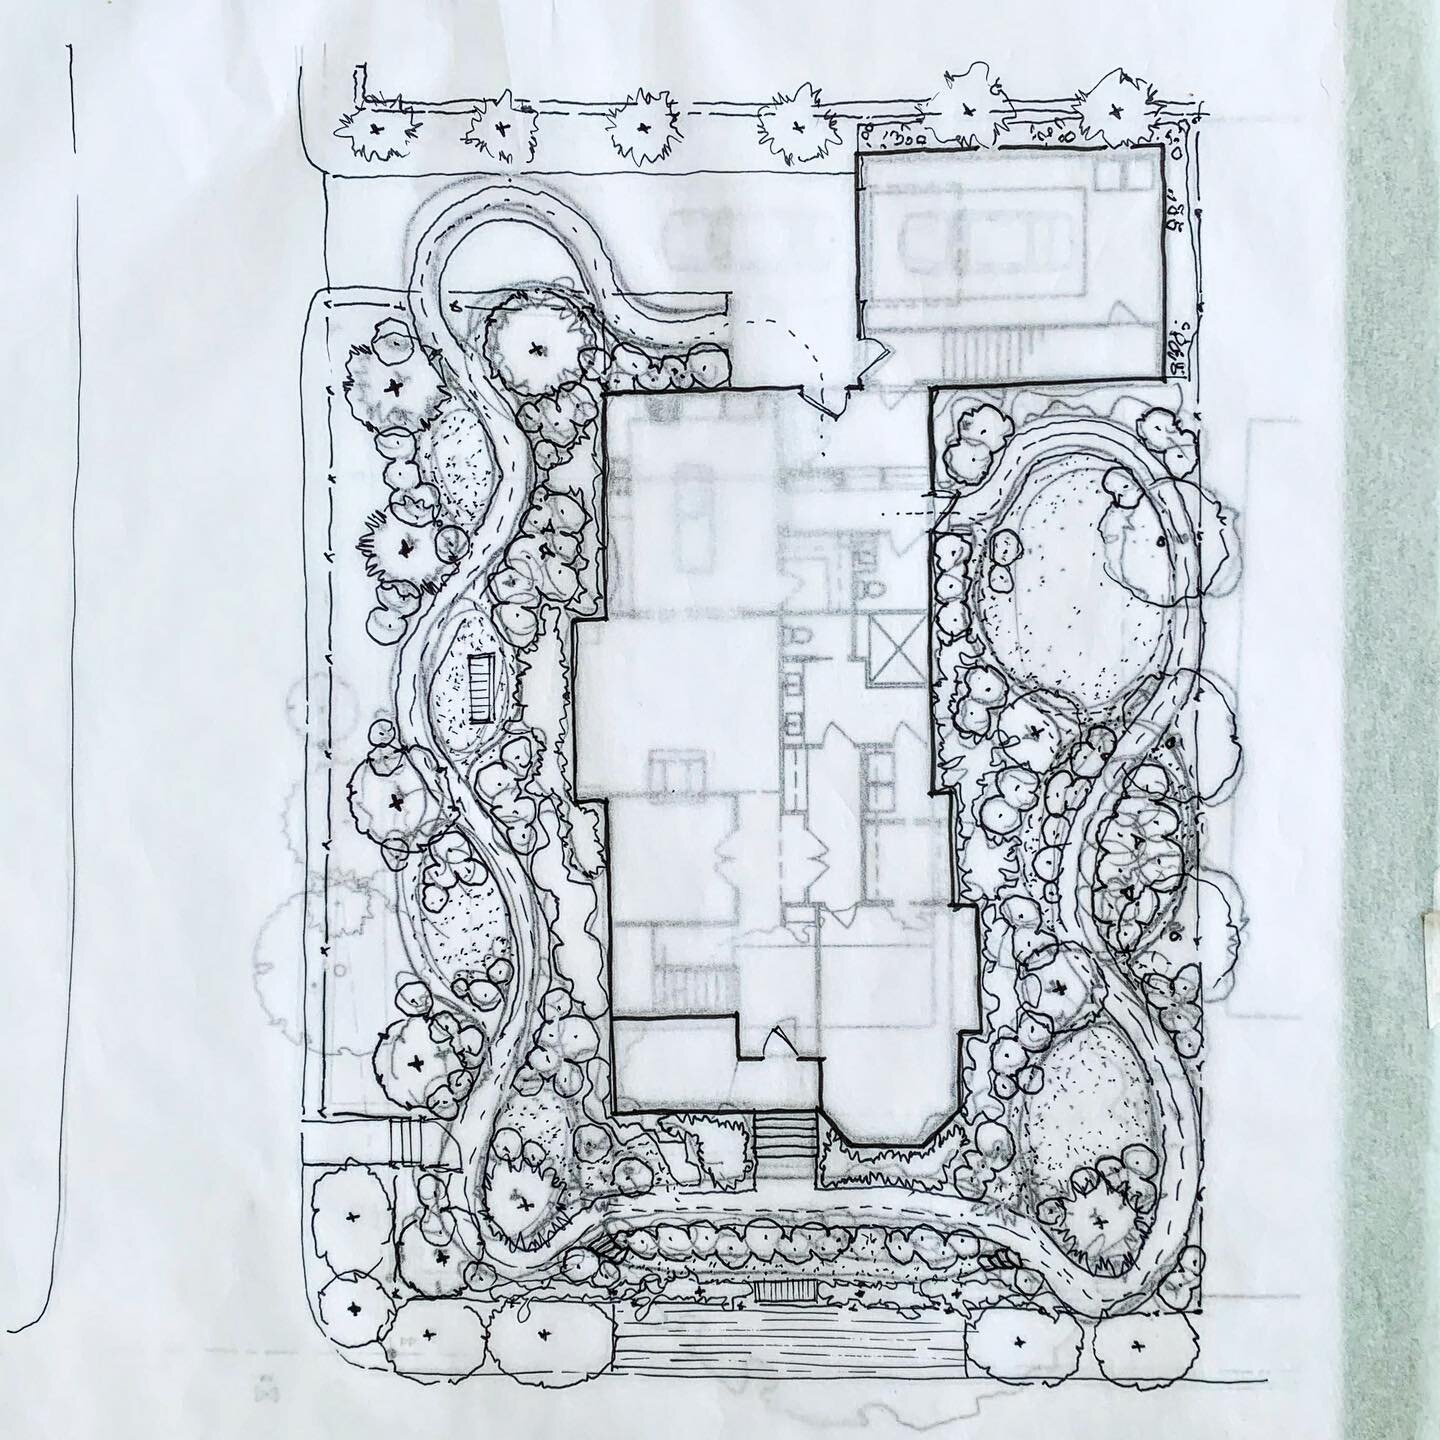 Concept Site Plan sketch